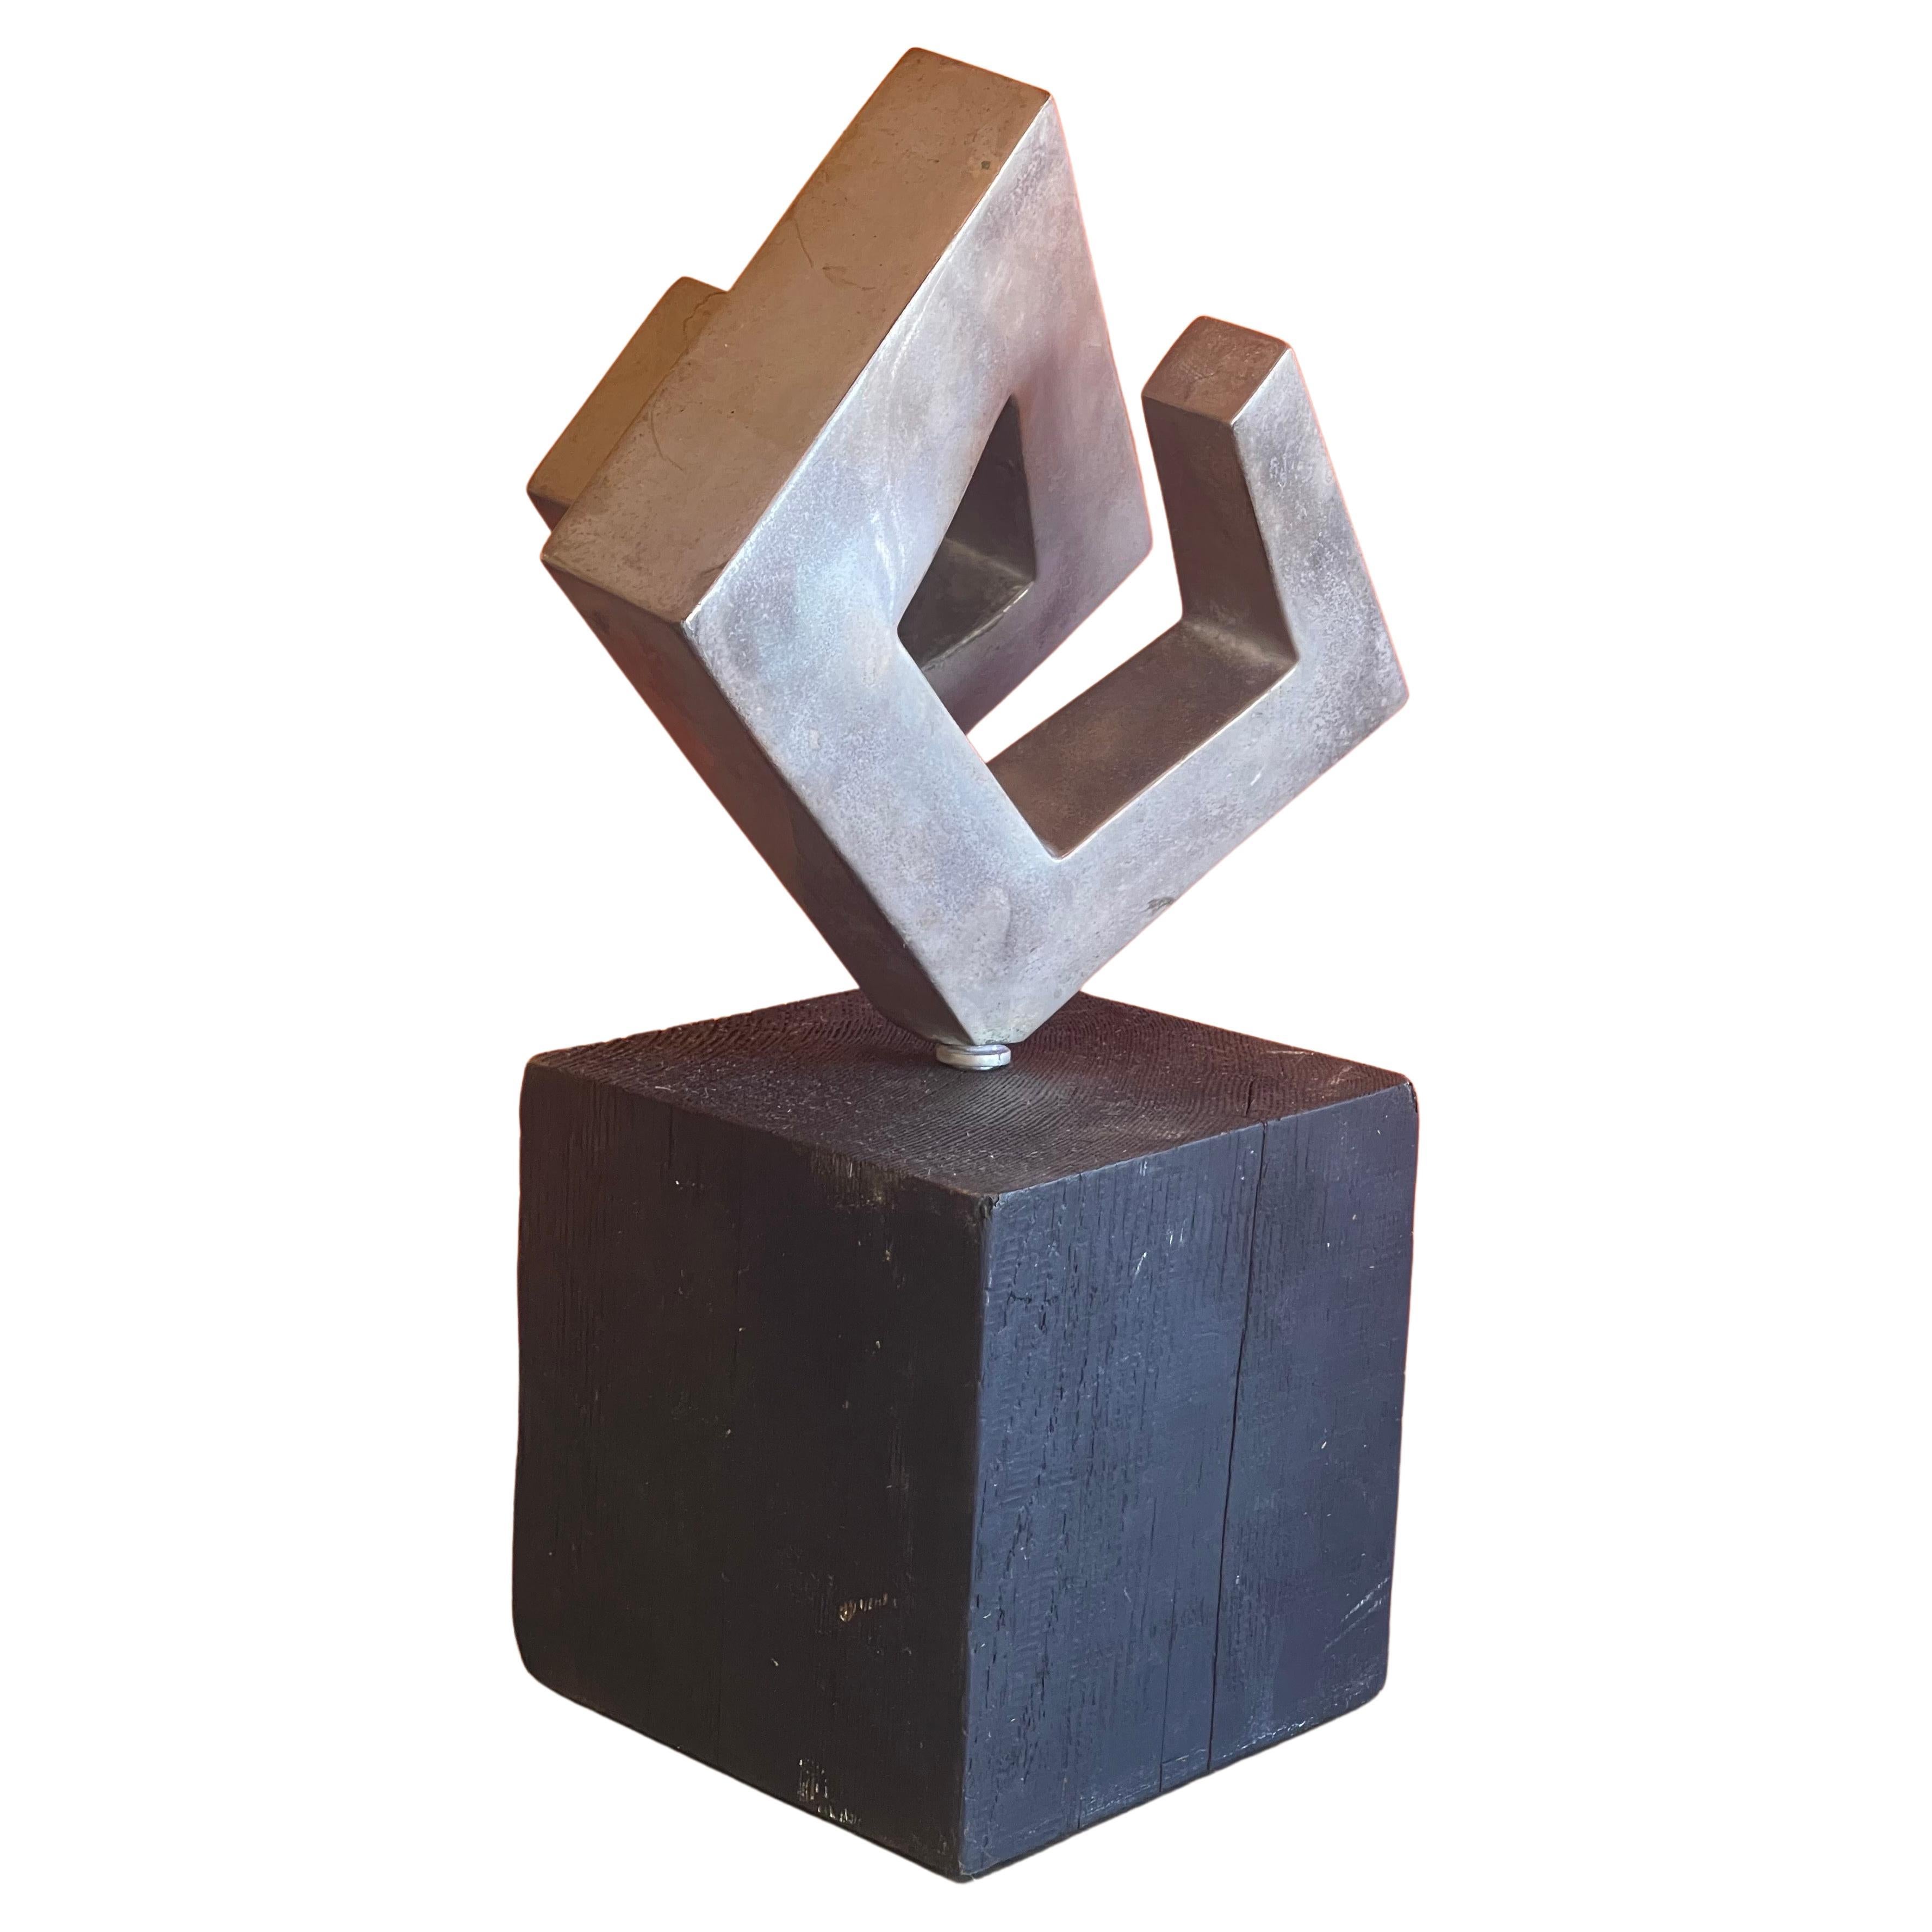 Modernistische abstrakte rotierende Skulptur auf Holzsockel